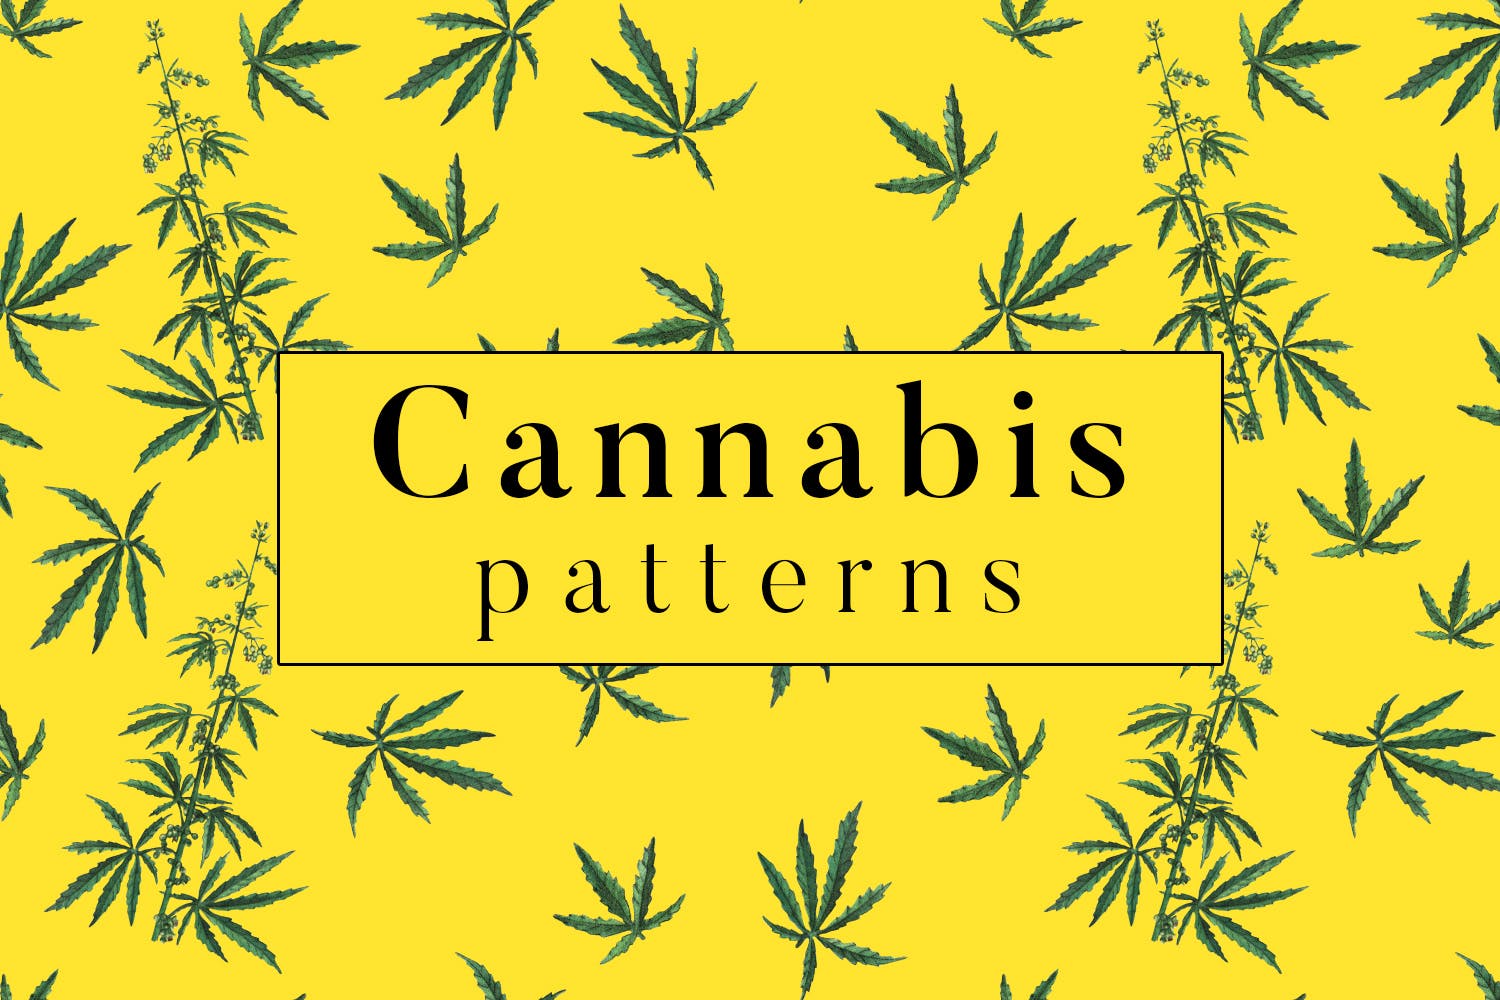 大麻叶子高清图案背景第一素材精选 Cannabis Patterns插图